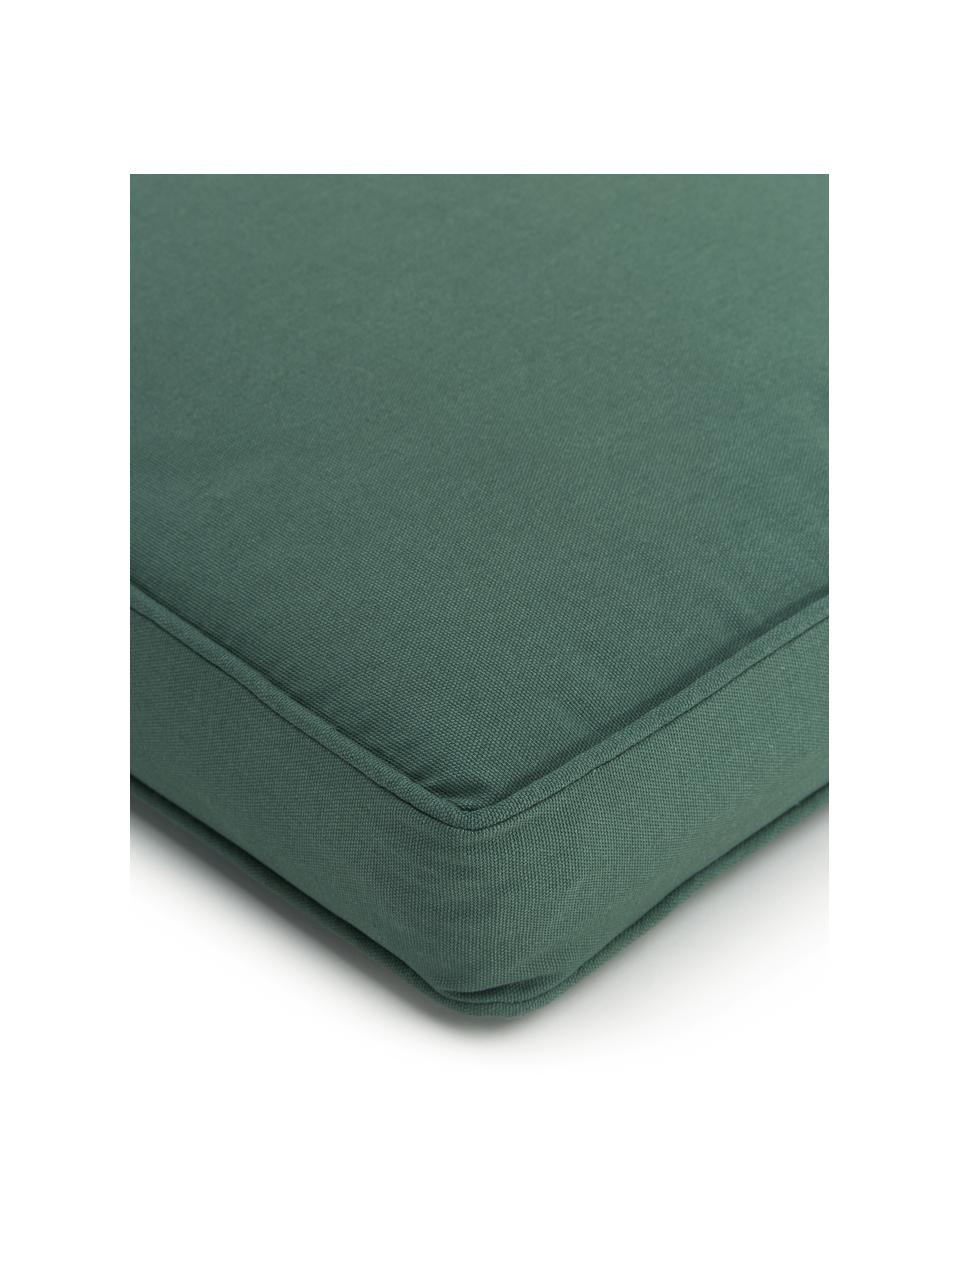 Cuscino sedia alto in cotone verde scuro Zoey, Rivestimento: 100% cotone, Verde scuro, Larg. 40 x Lung. 40 cm